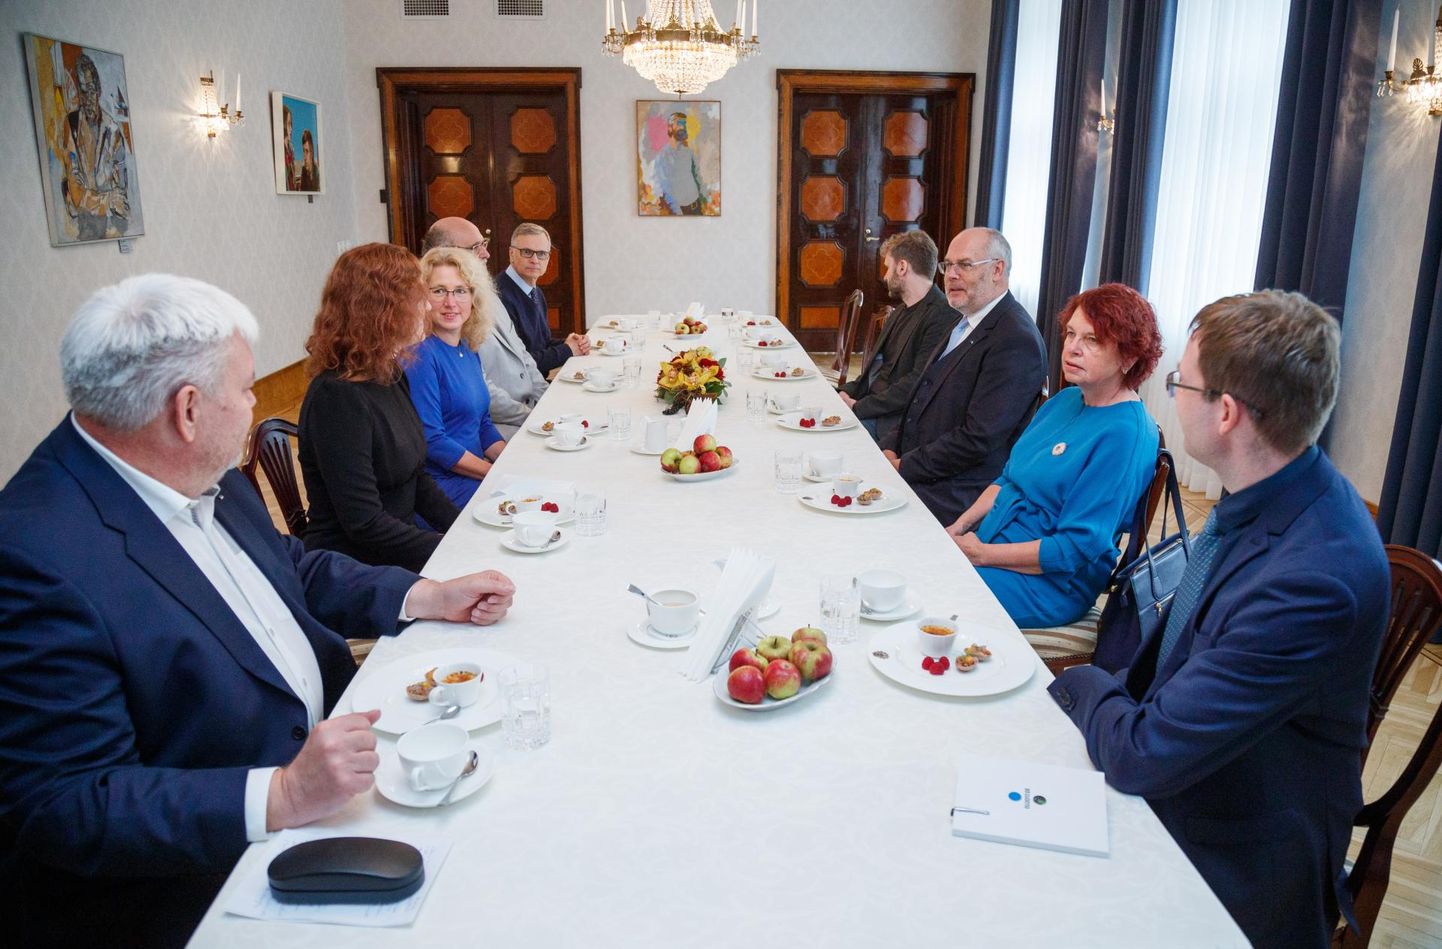 Члены научного совета встретились в президентом Аларом Карисом.